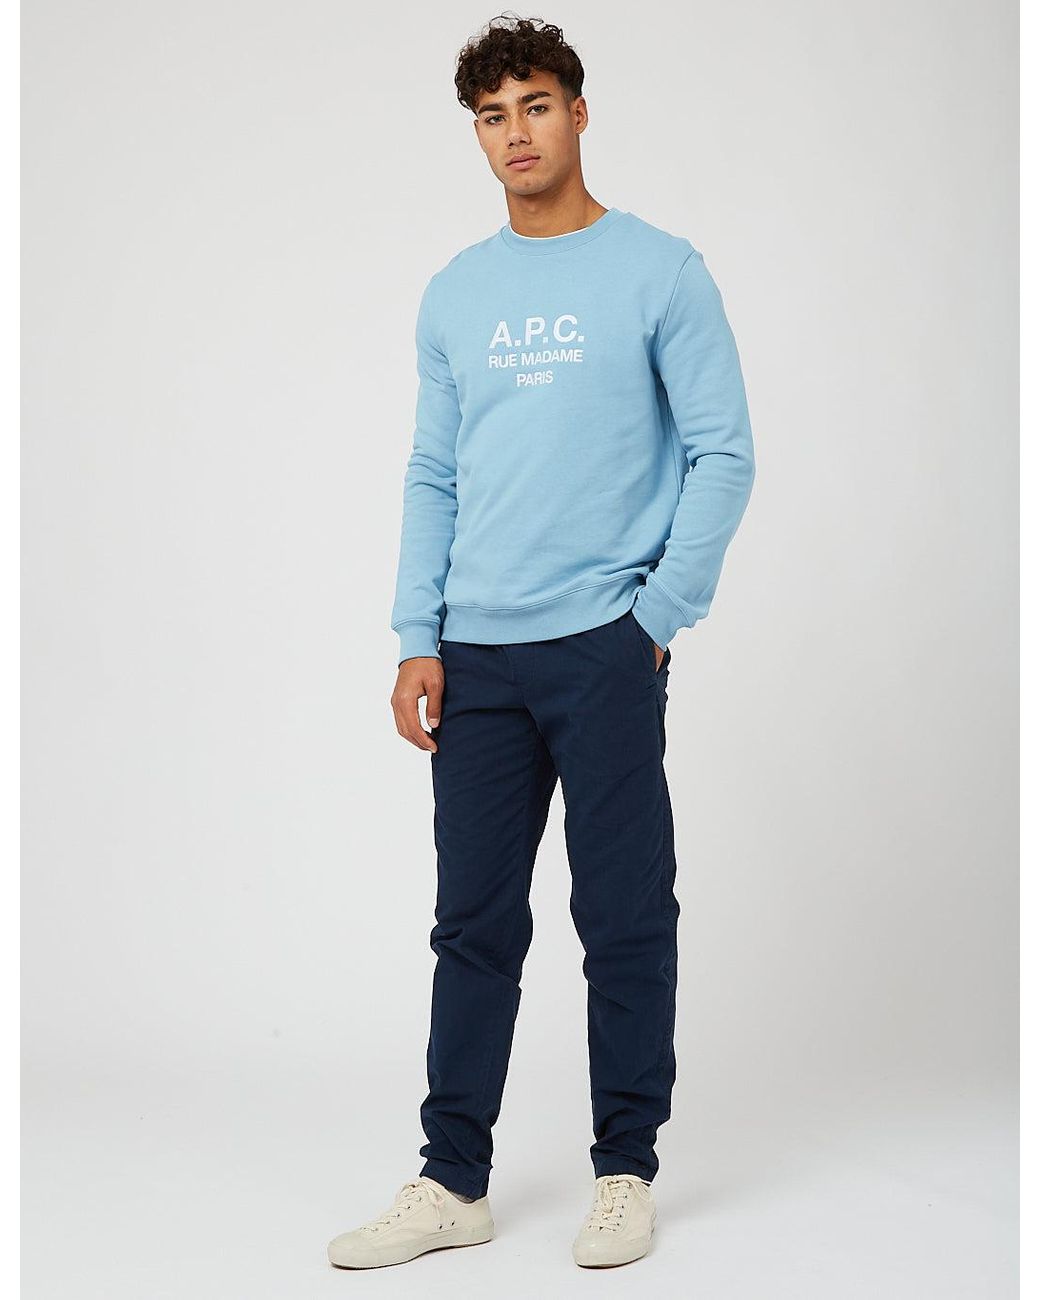 A.P.C. Rufus Sweatshirt in Blue for Men - Lyst